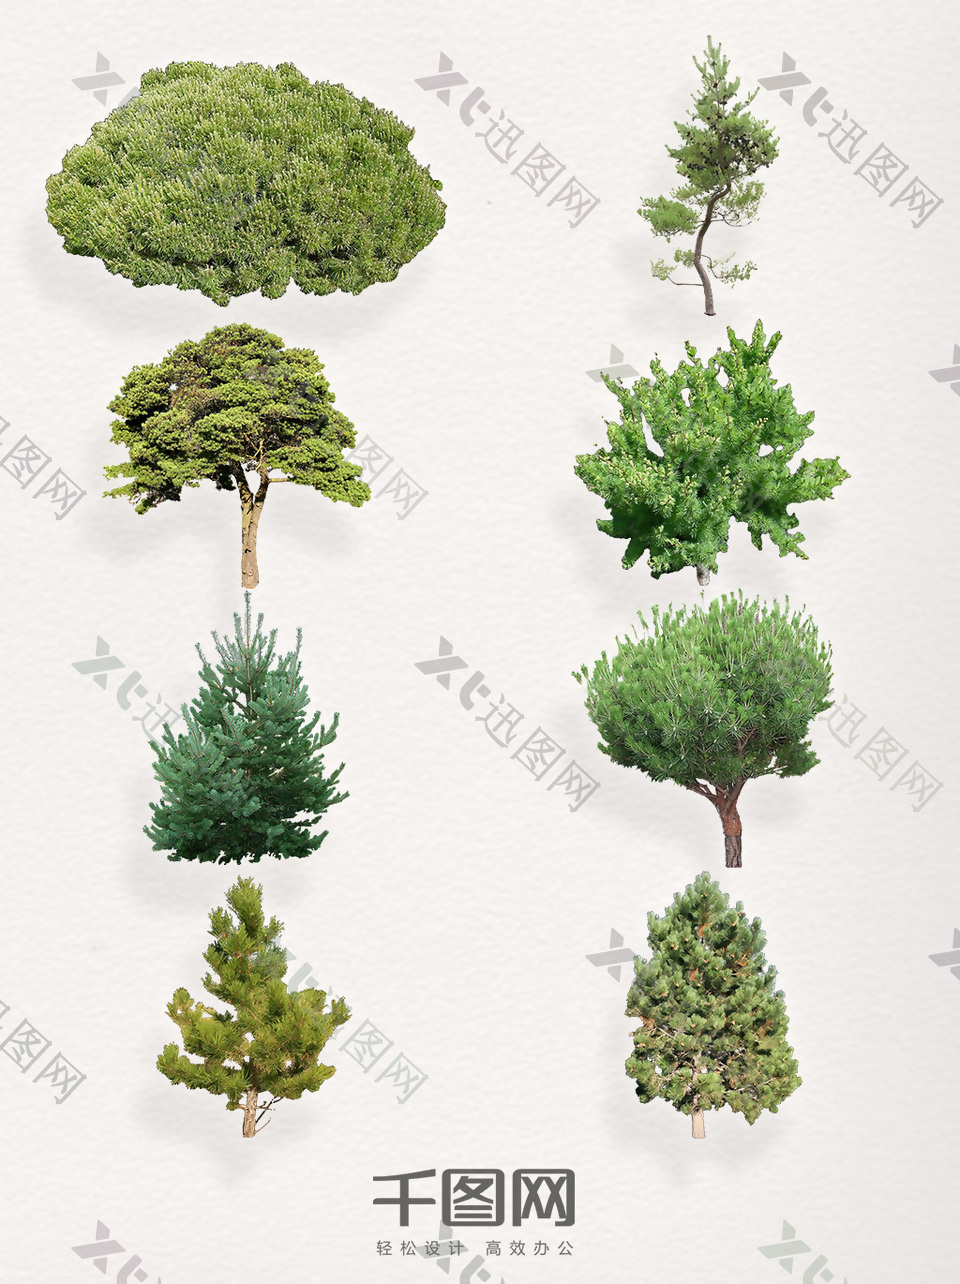 一组不同种类的松树装饰图